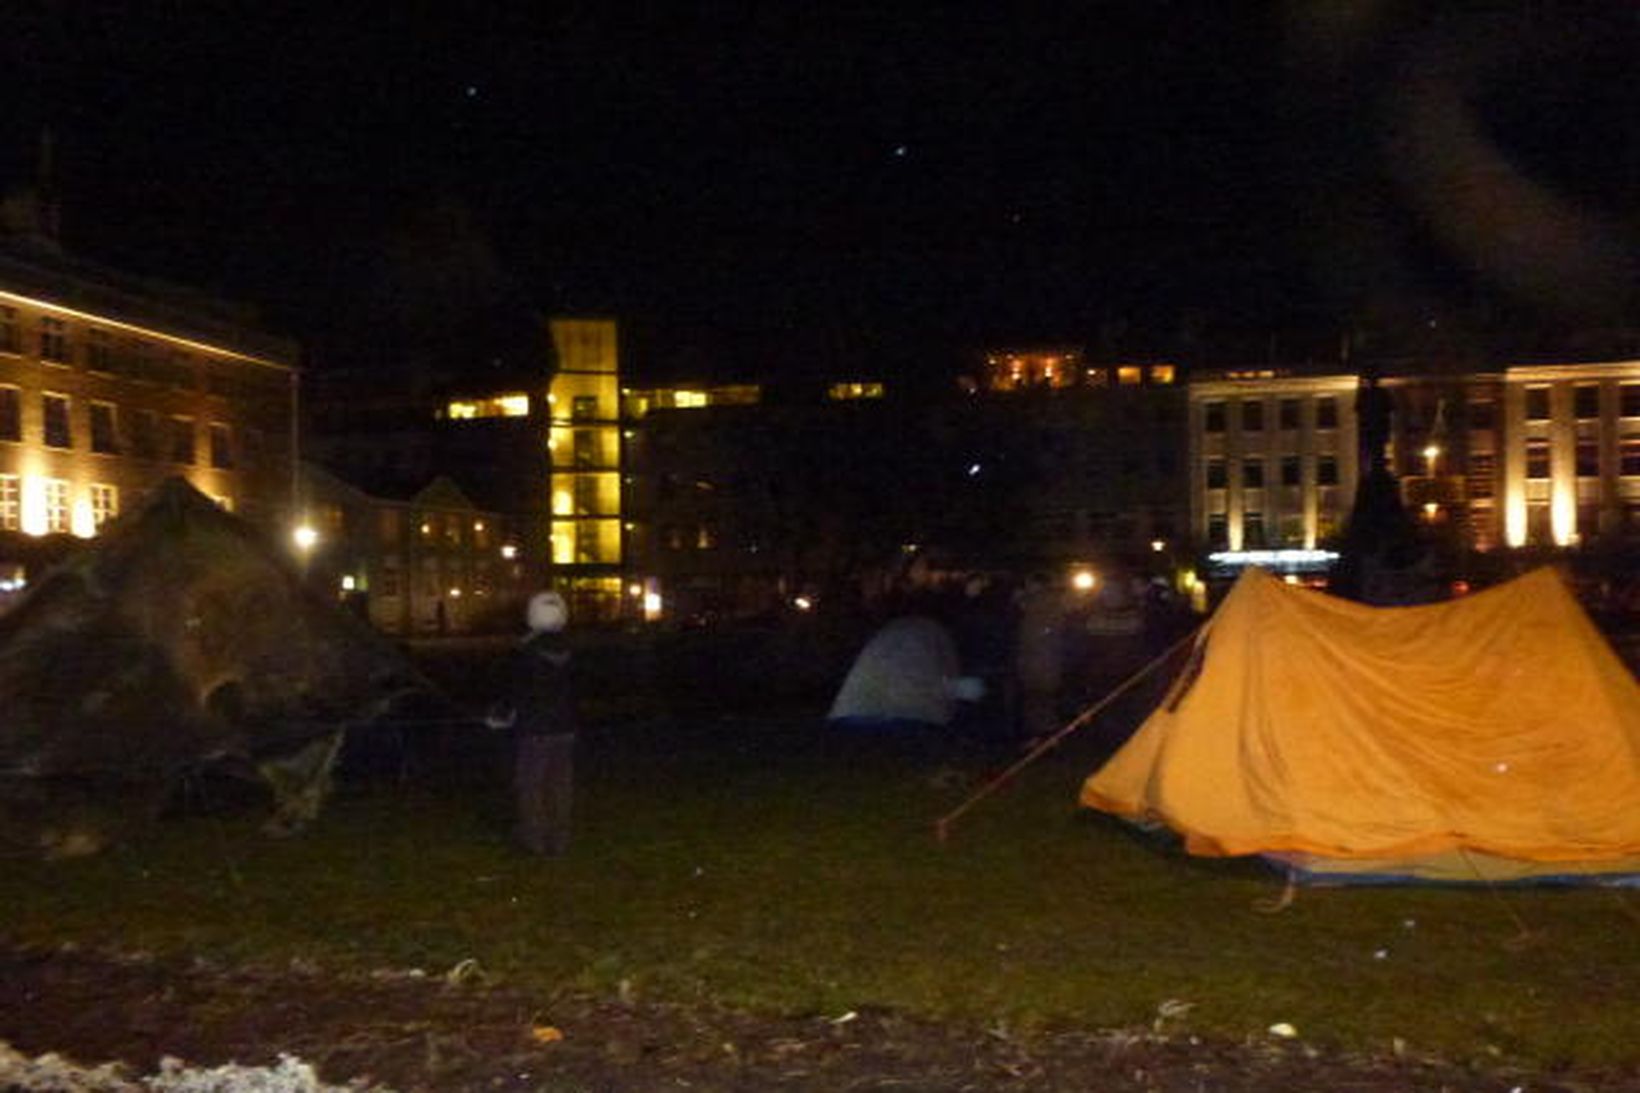 Occupy Reykjavík